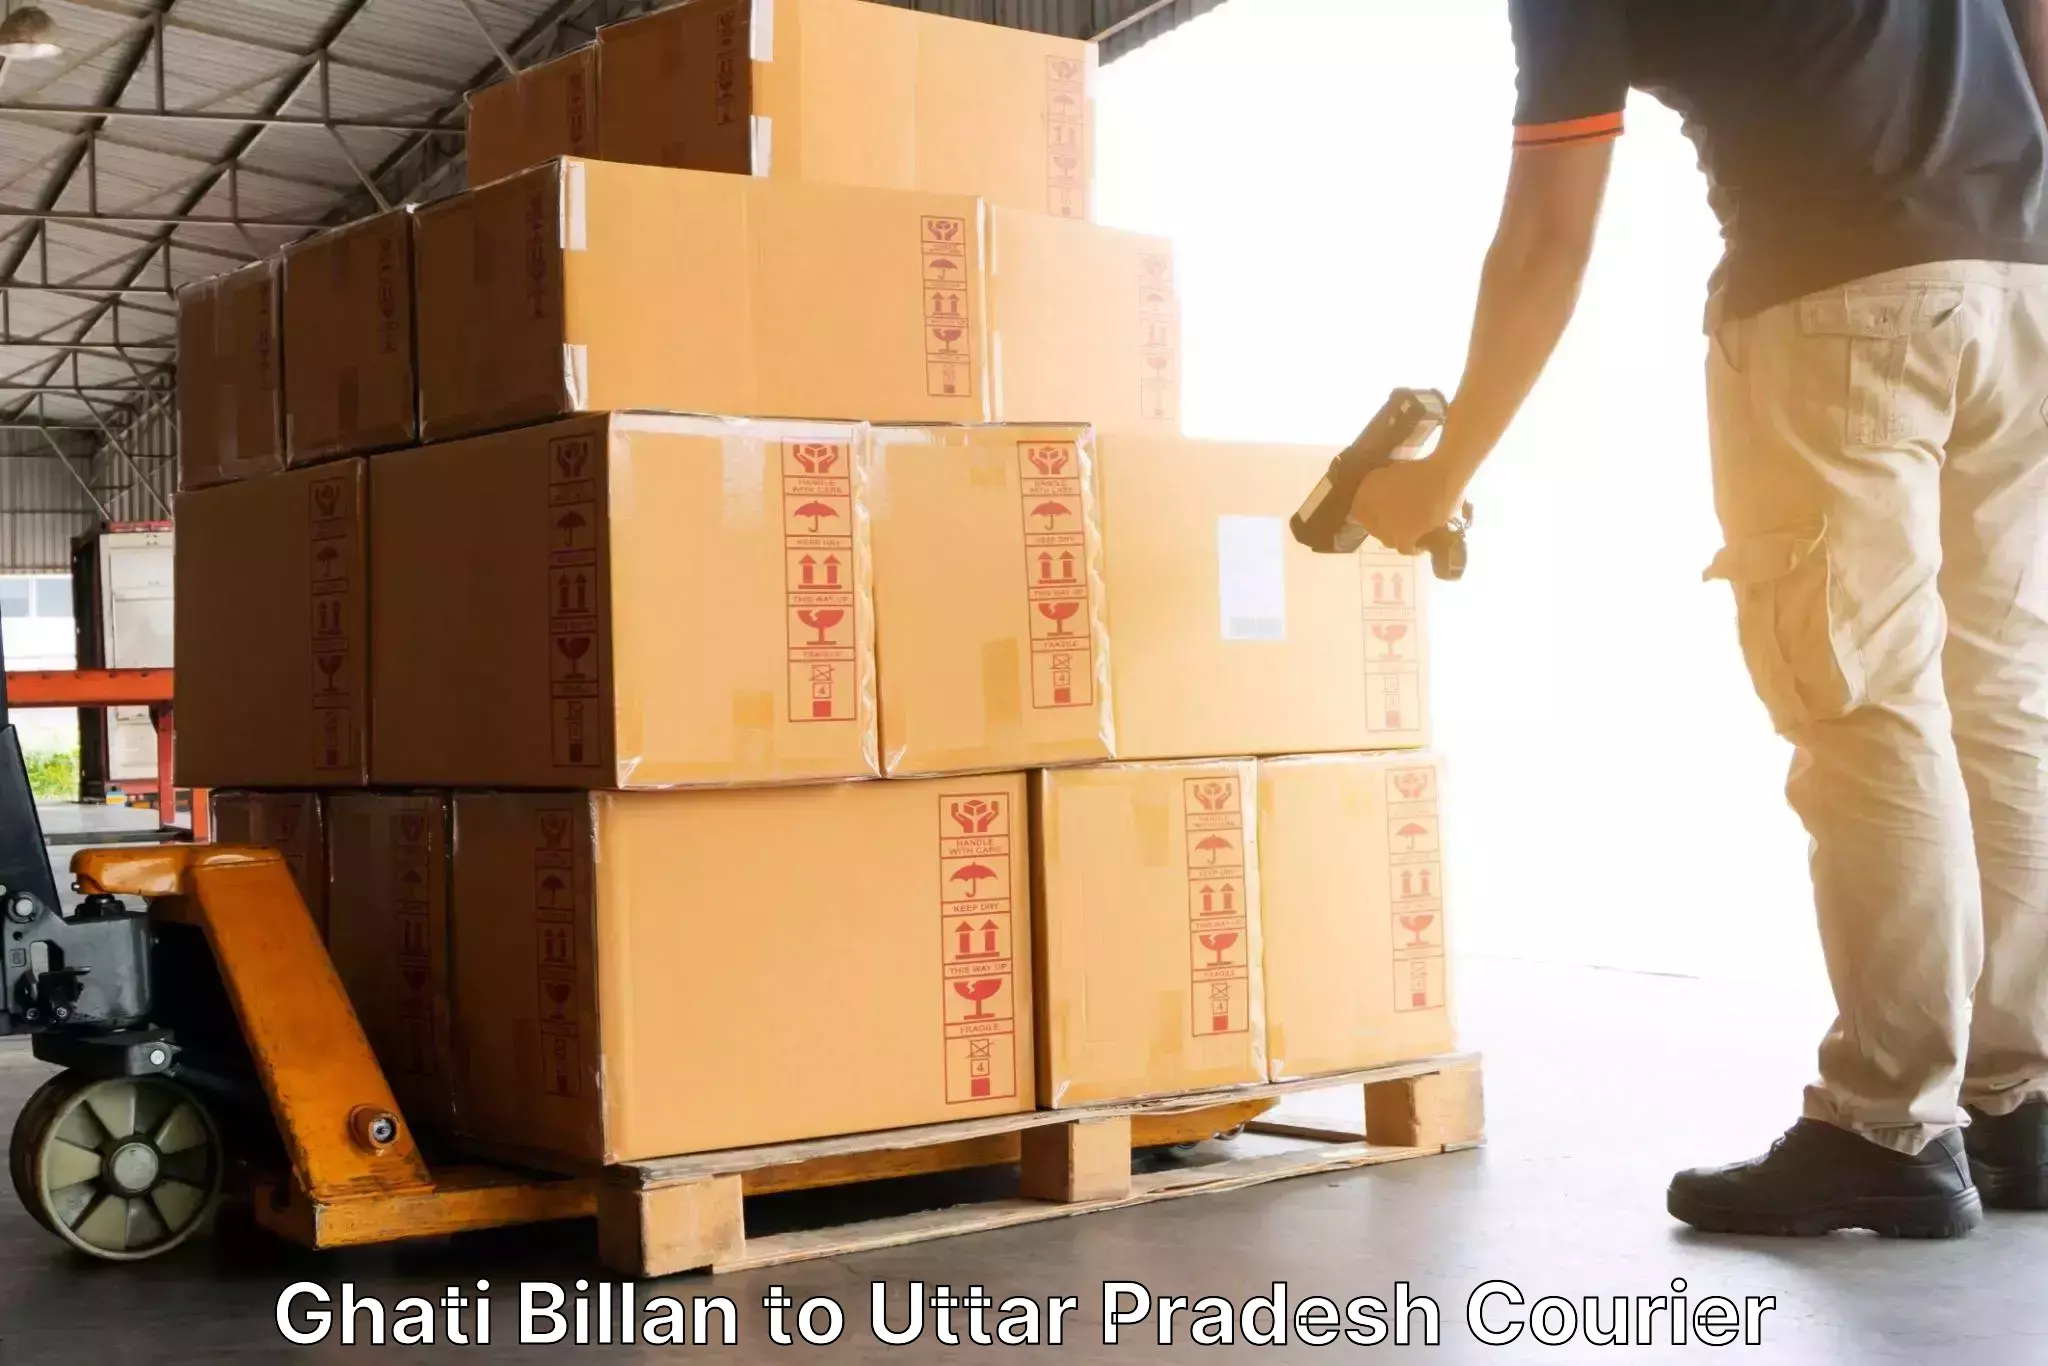 Individual parcel service Ghati Billan to Amethi